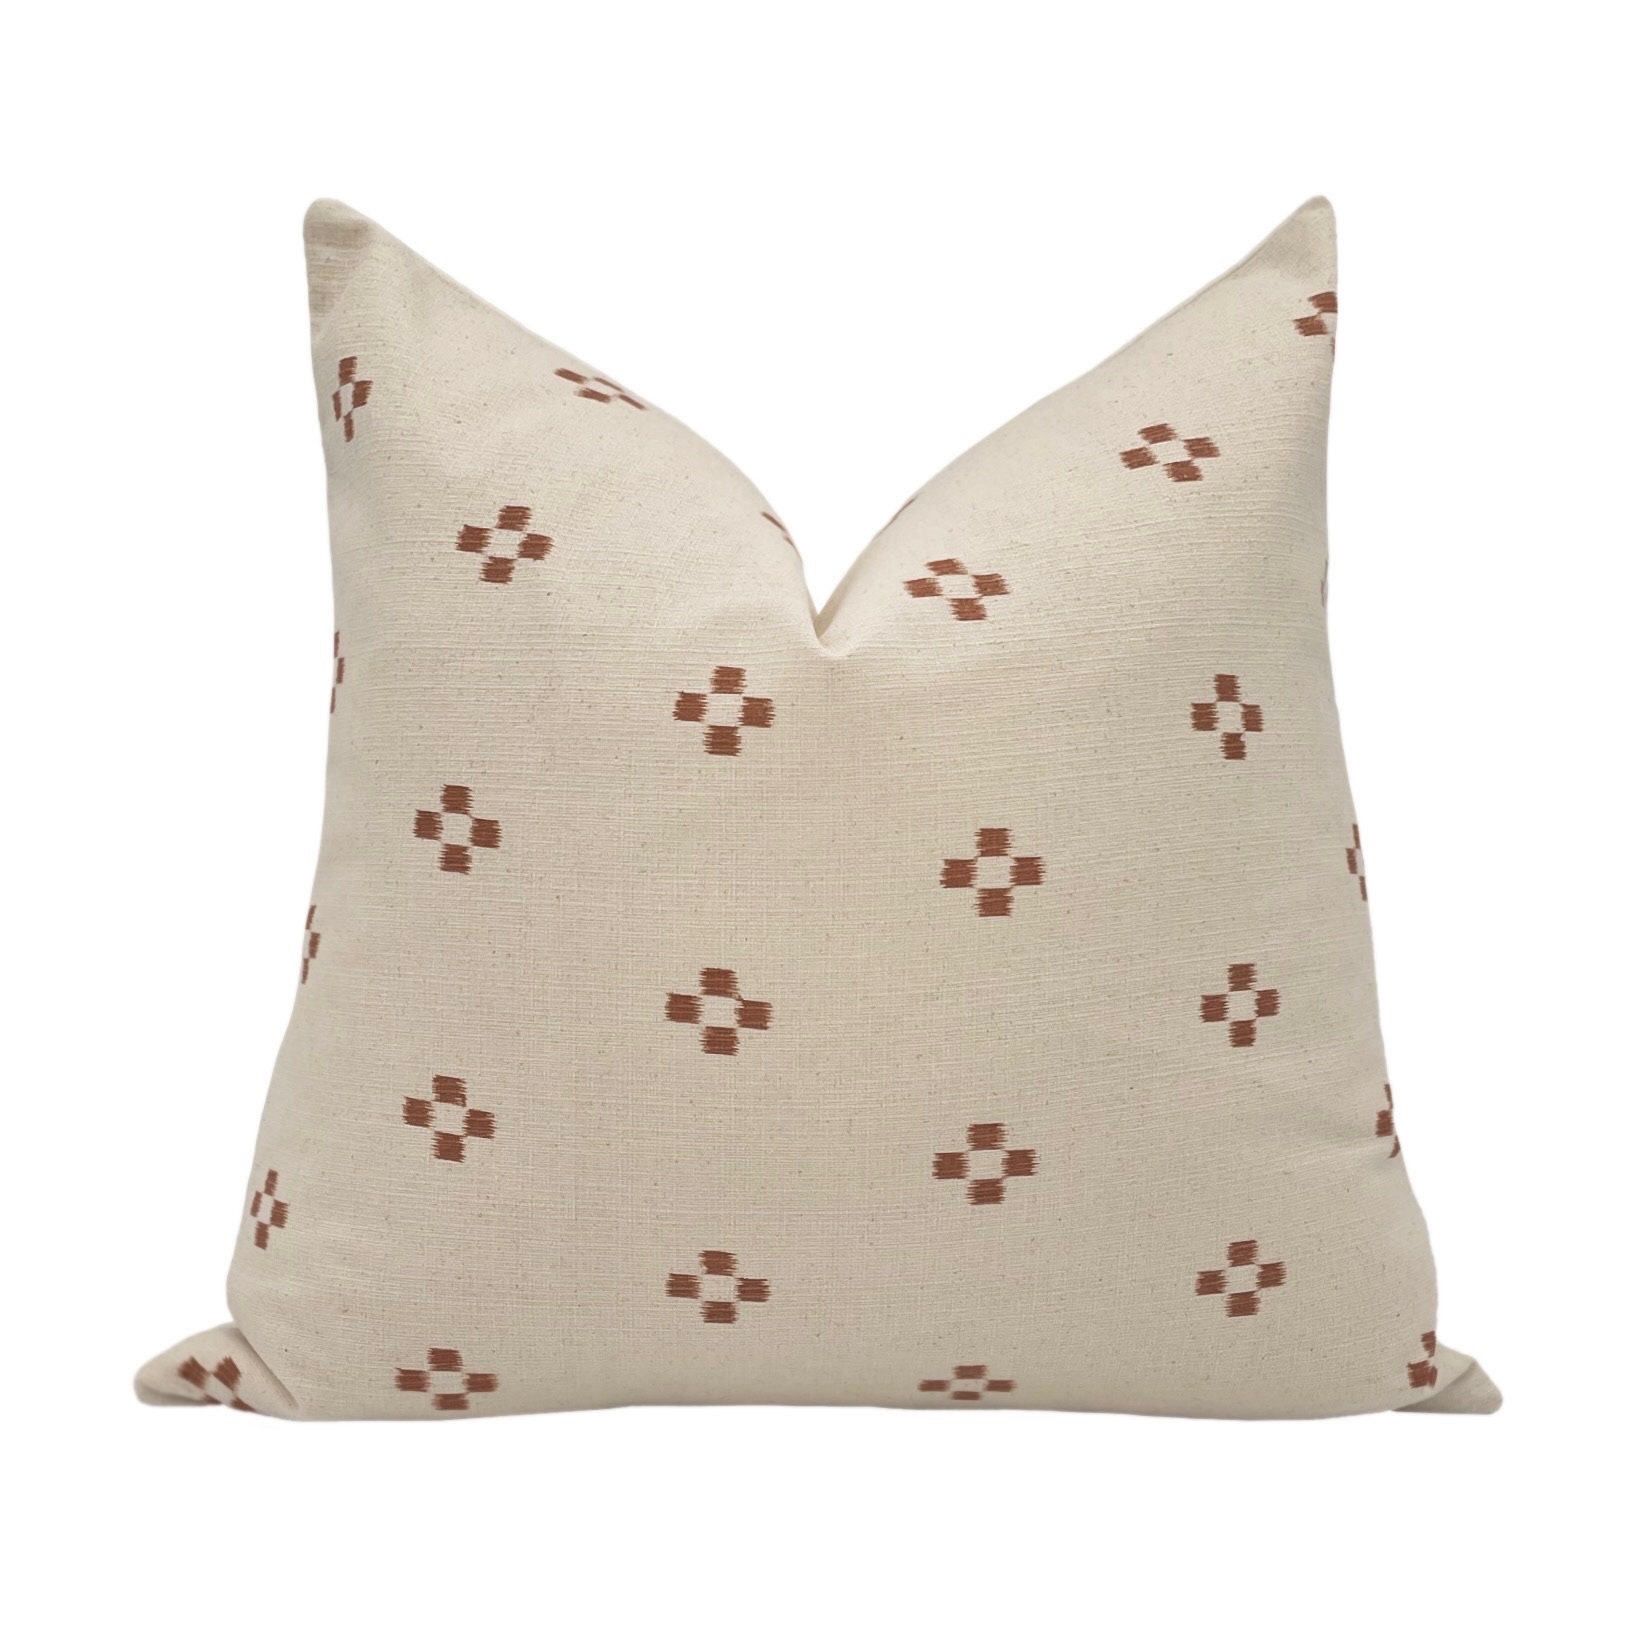 Aaakar Checkered Blockprinted Throw Pillow, Rust 18x18 inch